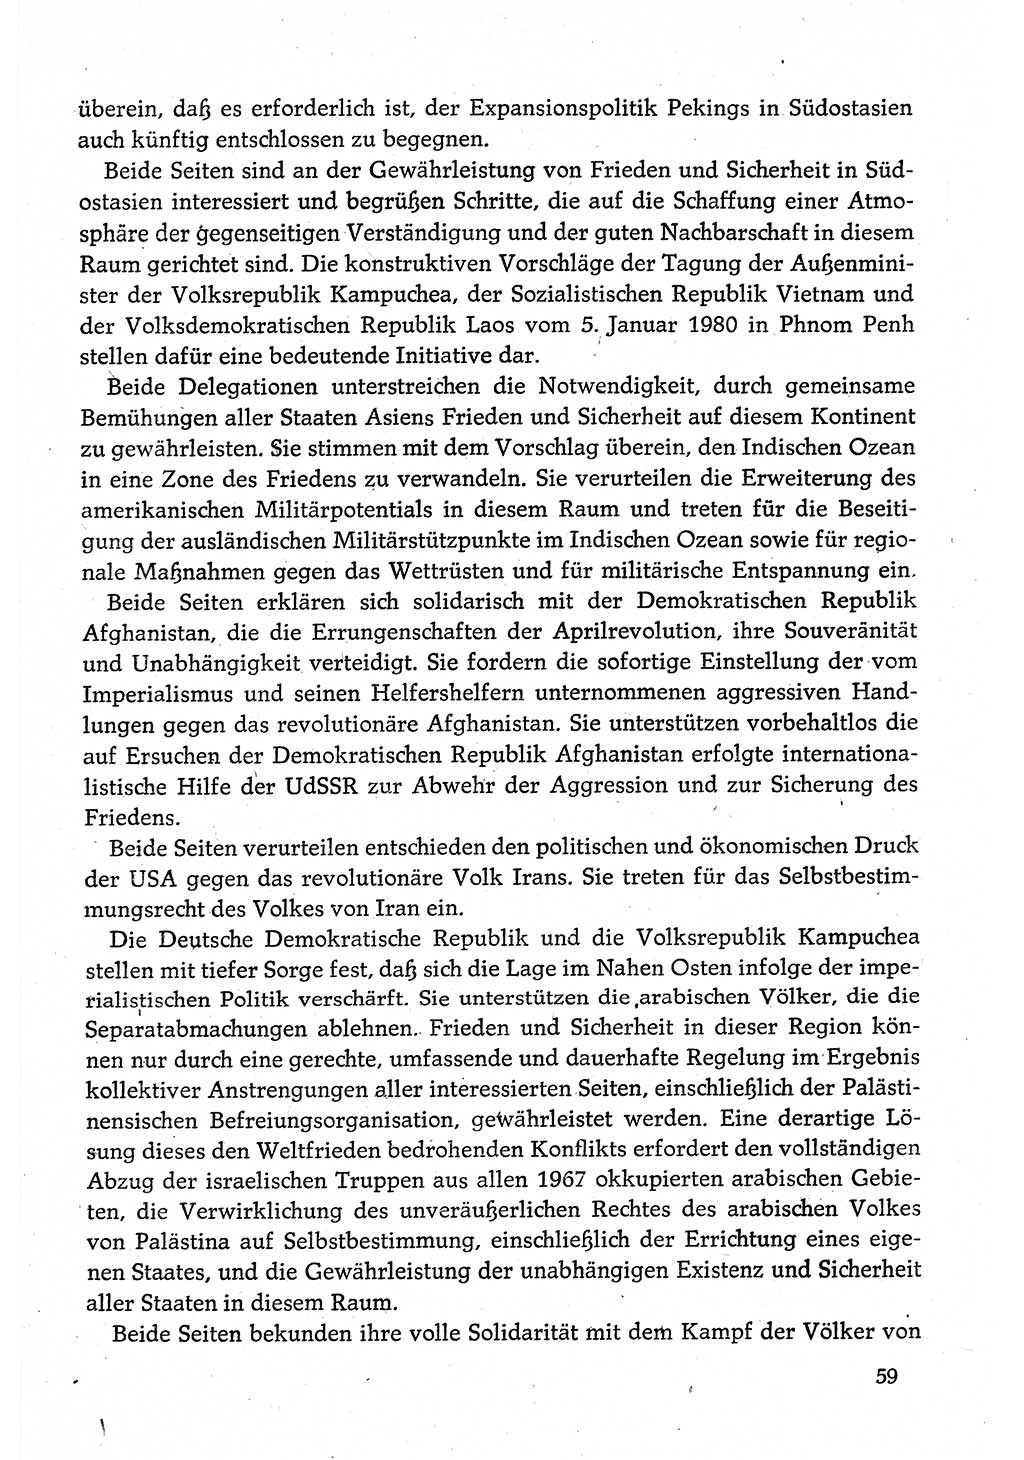 Dokumente der Sozialistischen Einheitspartei Deutschlands (SED) [Deutsche Demokratische Republik (DDR)] 1980-1981, Seite 59 (Dok. SED DDR 1980-1981, S. 59)